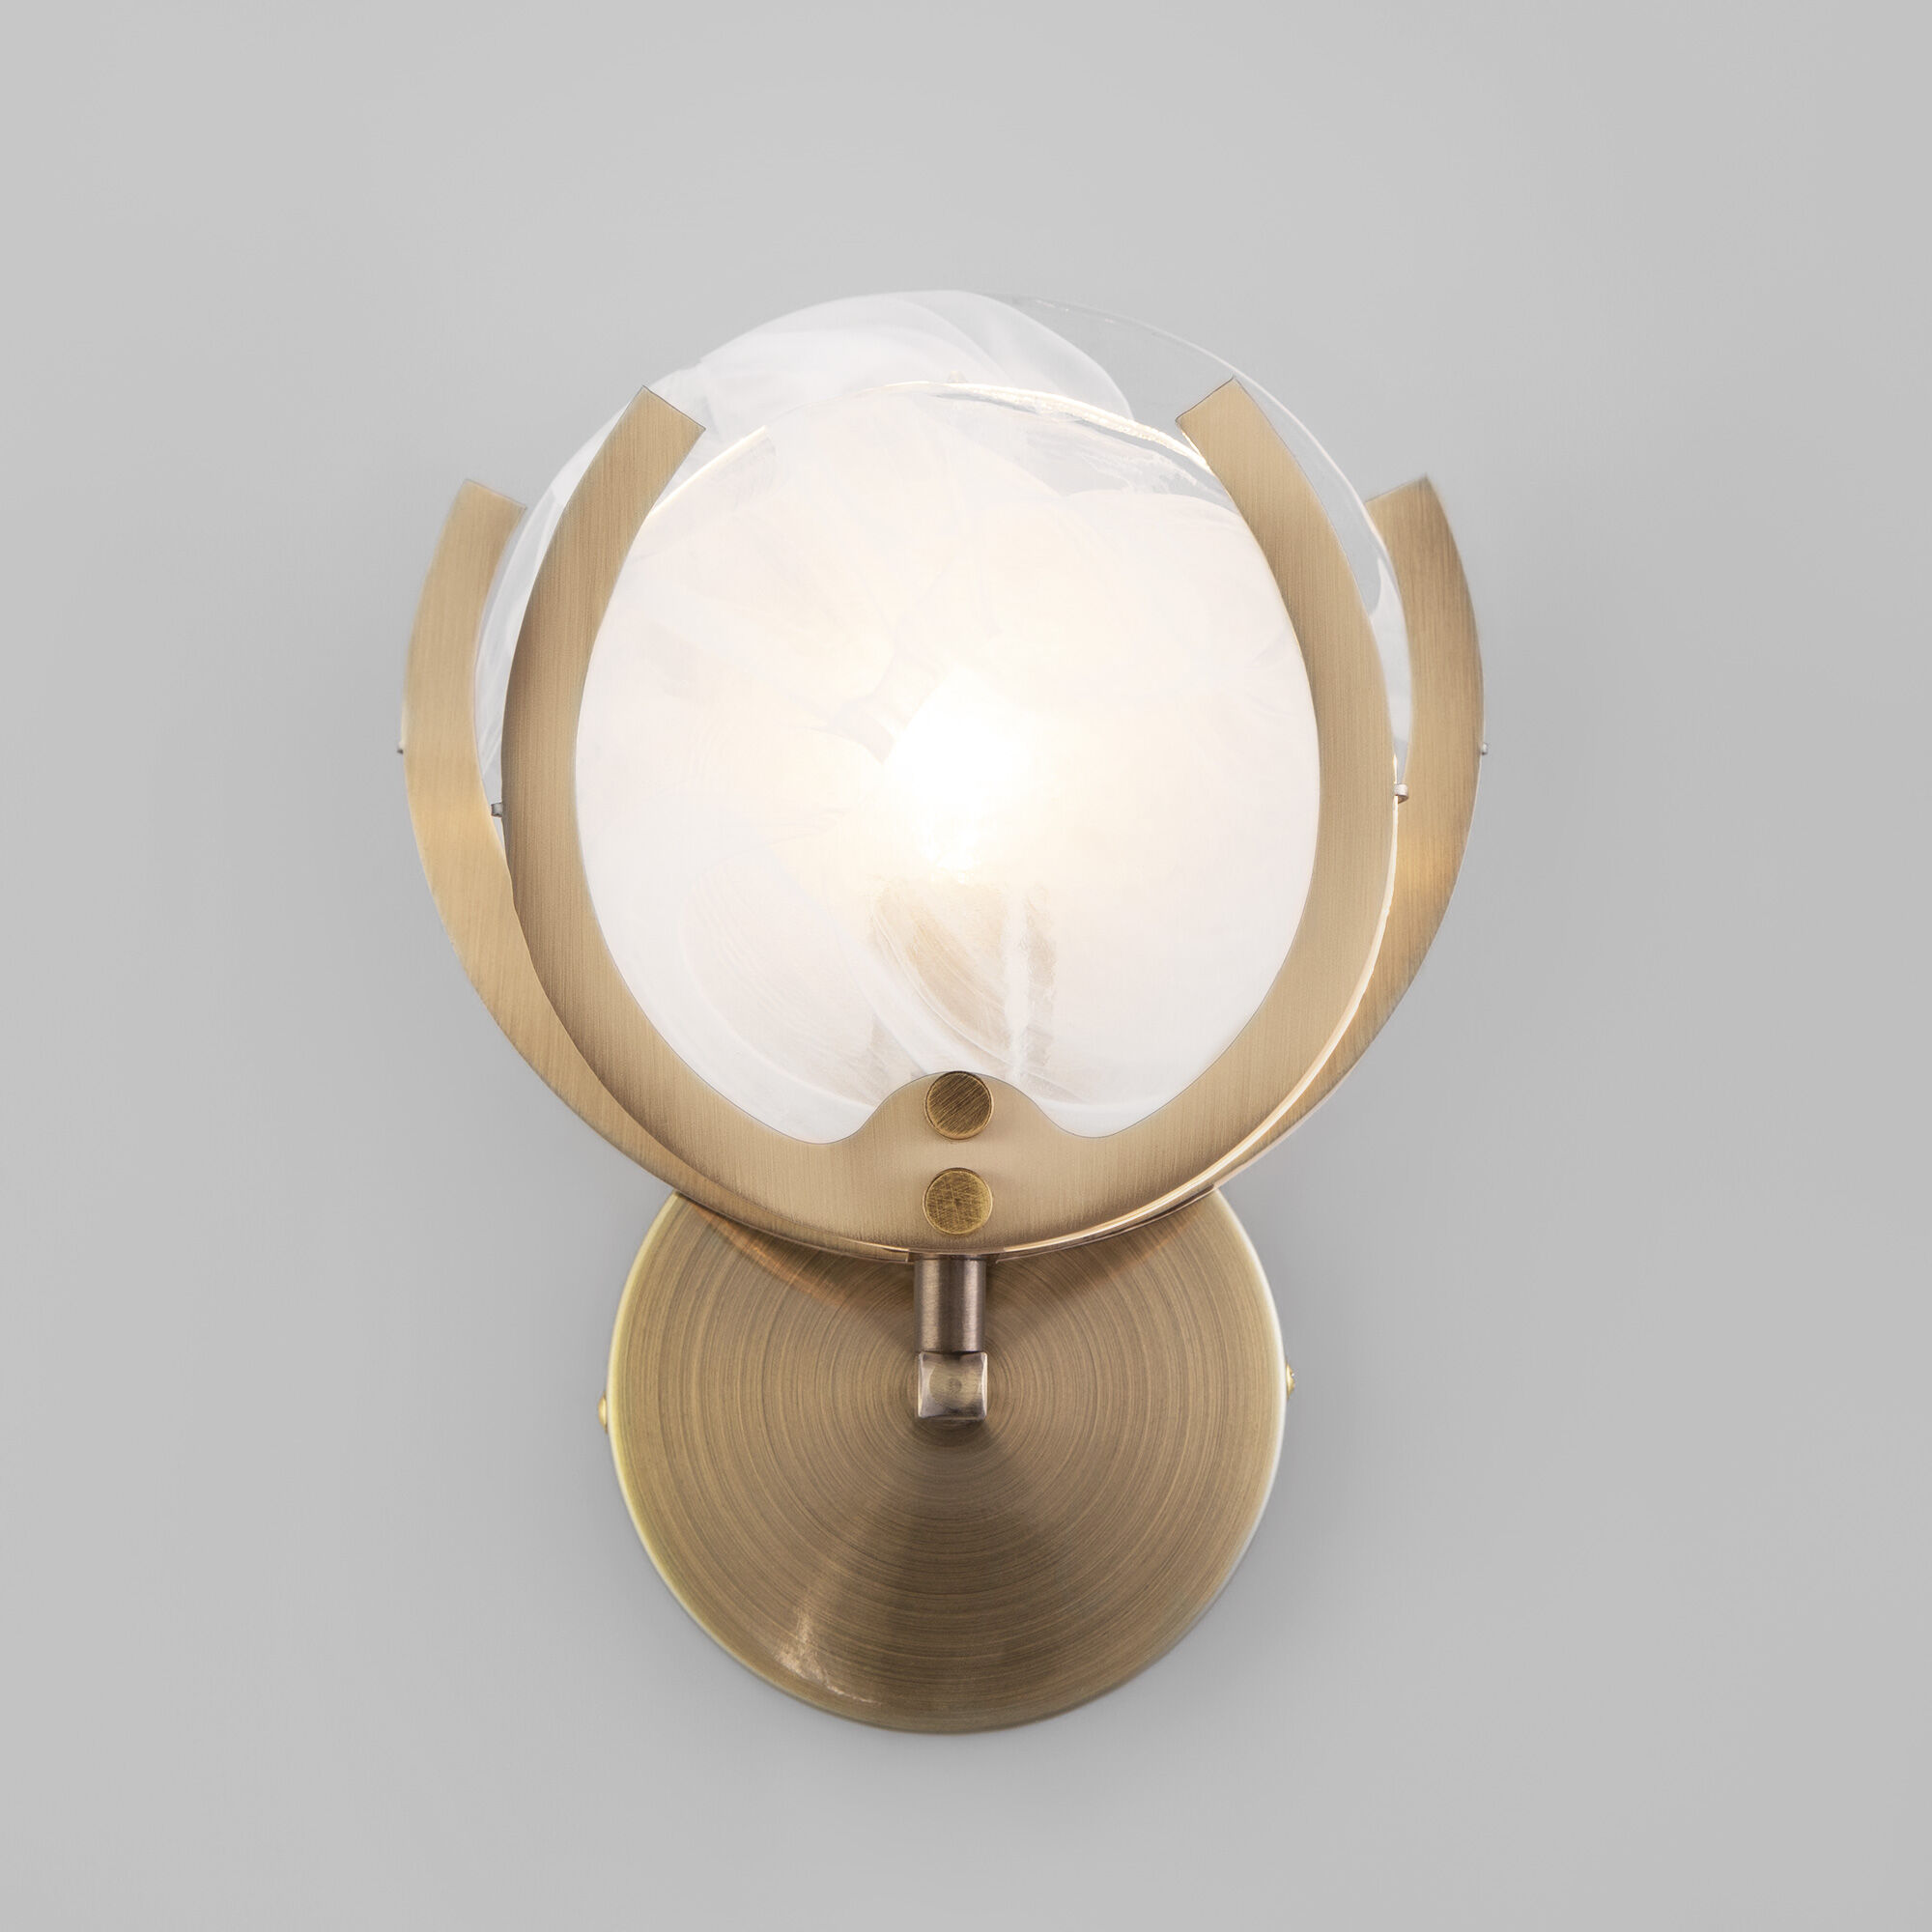 Настенный светильник со стеклянным рассеивателем Bogate's Galicia 354/1. Фото 2